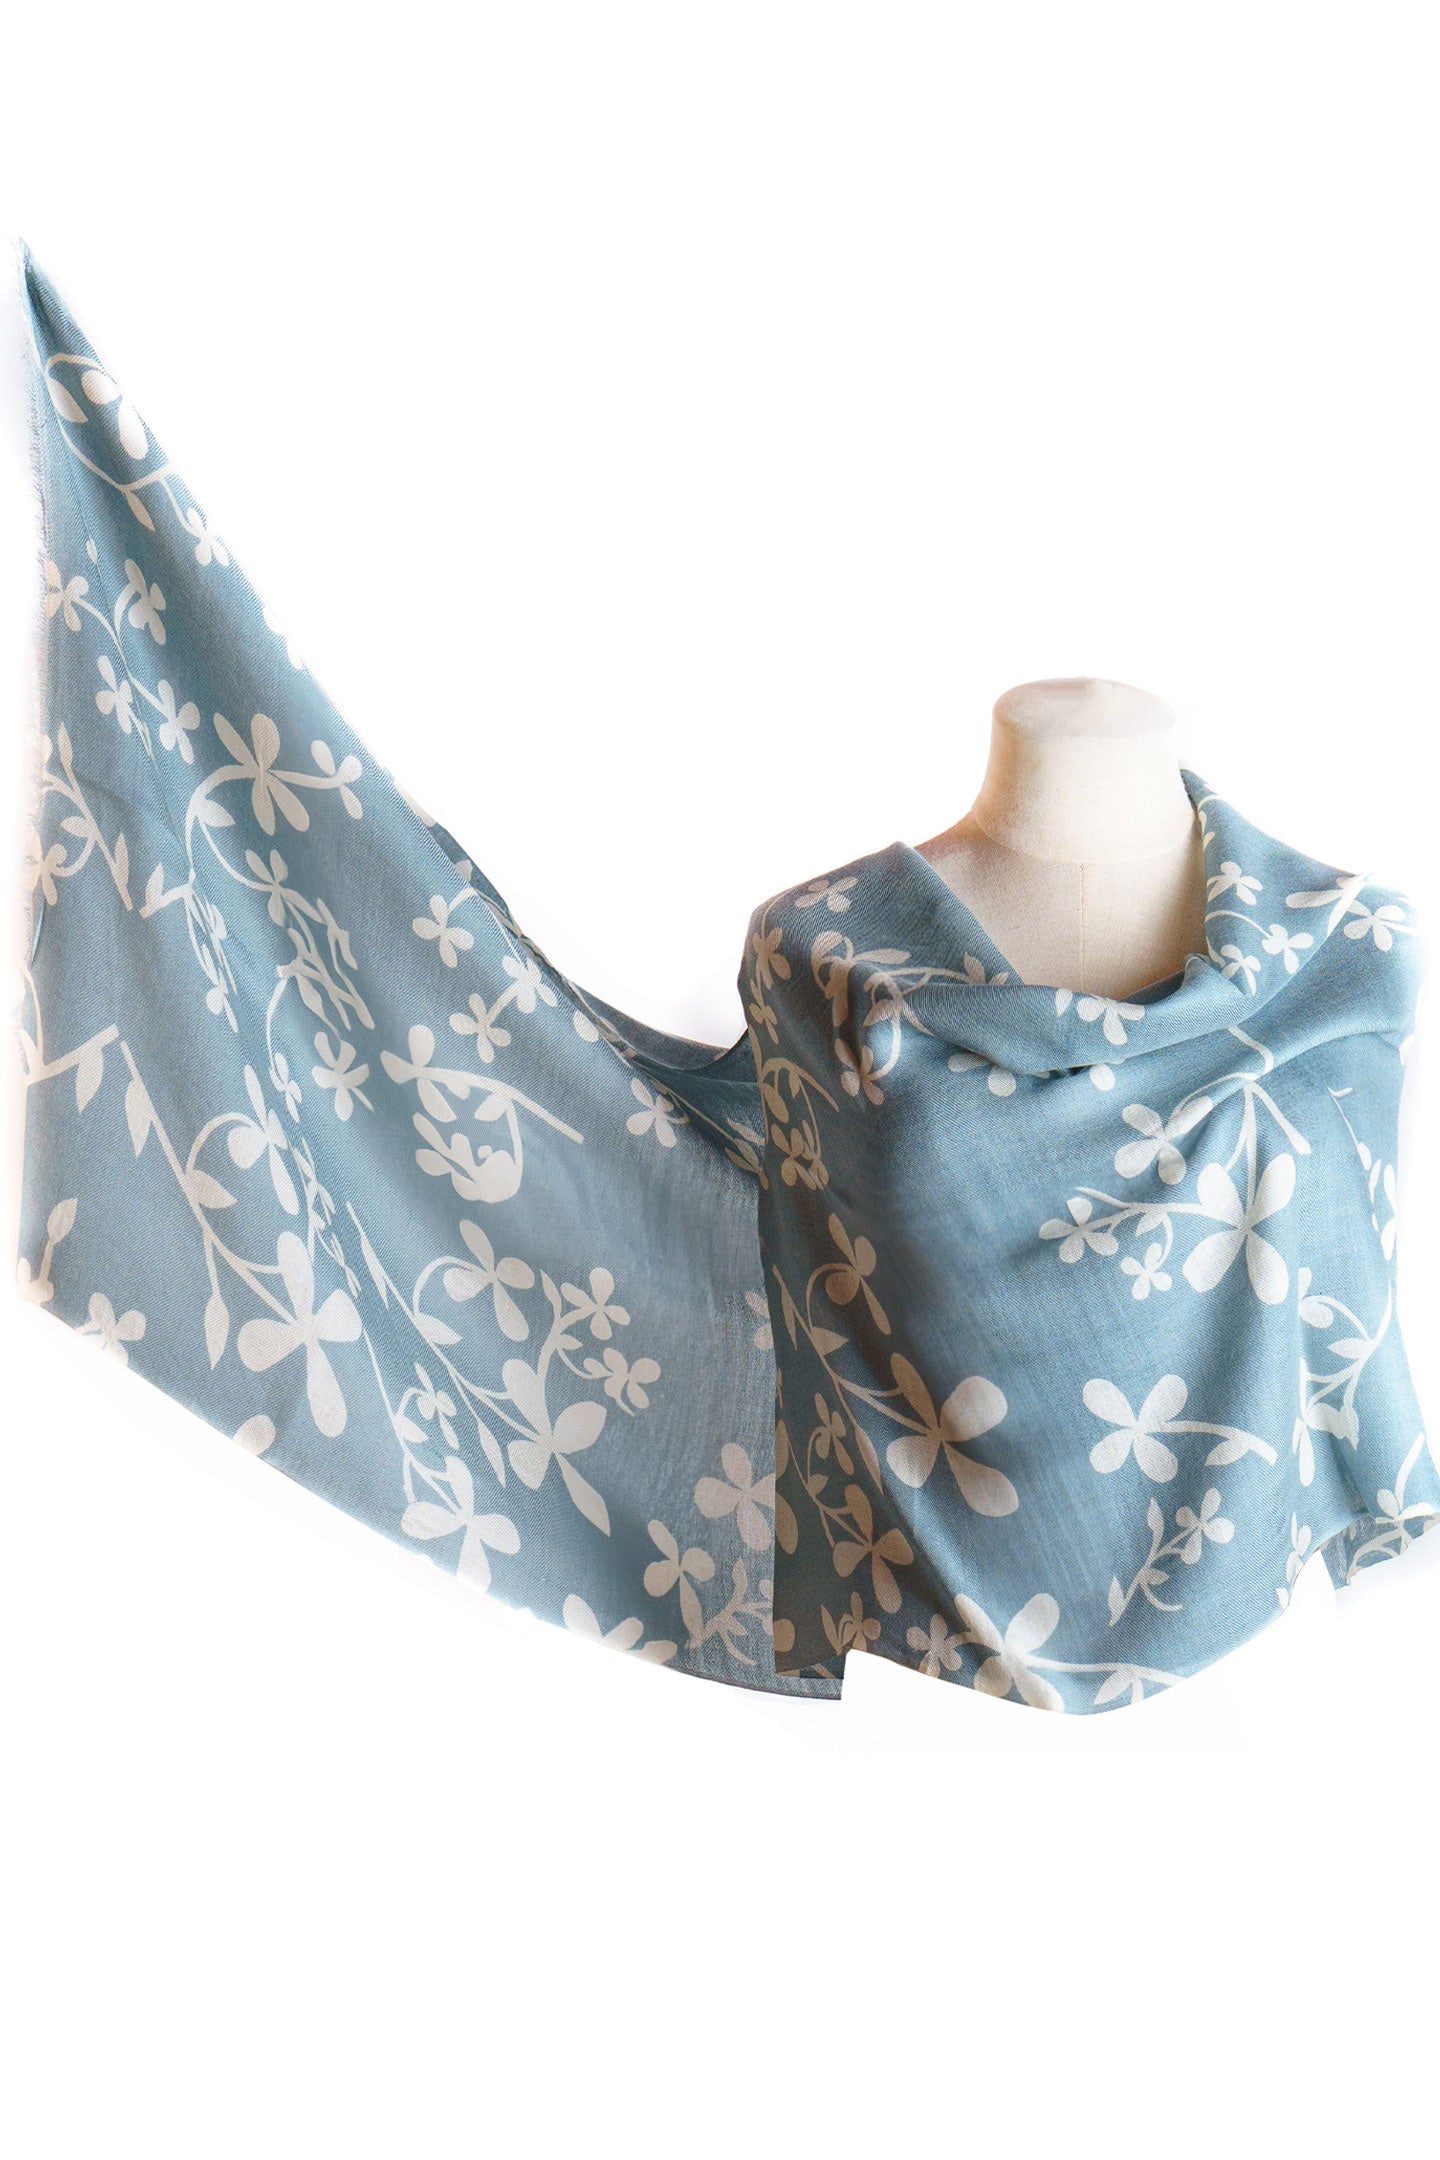 Silk Cashmere Shawl Wrap in Petal Blue